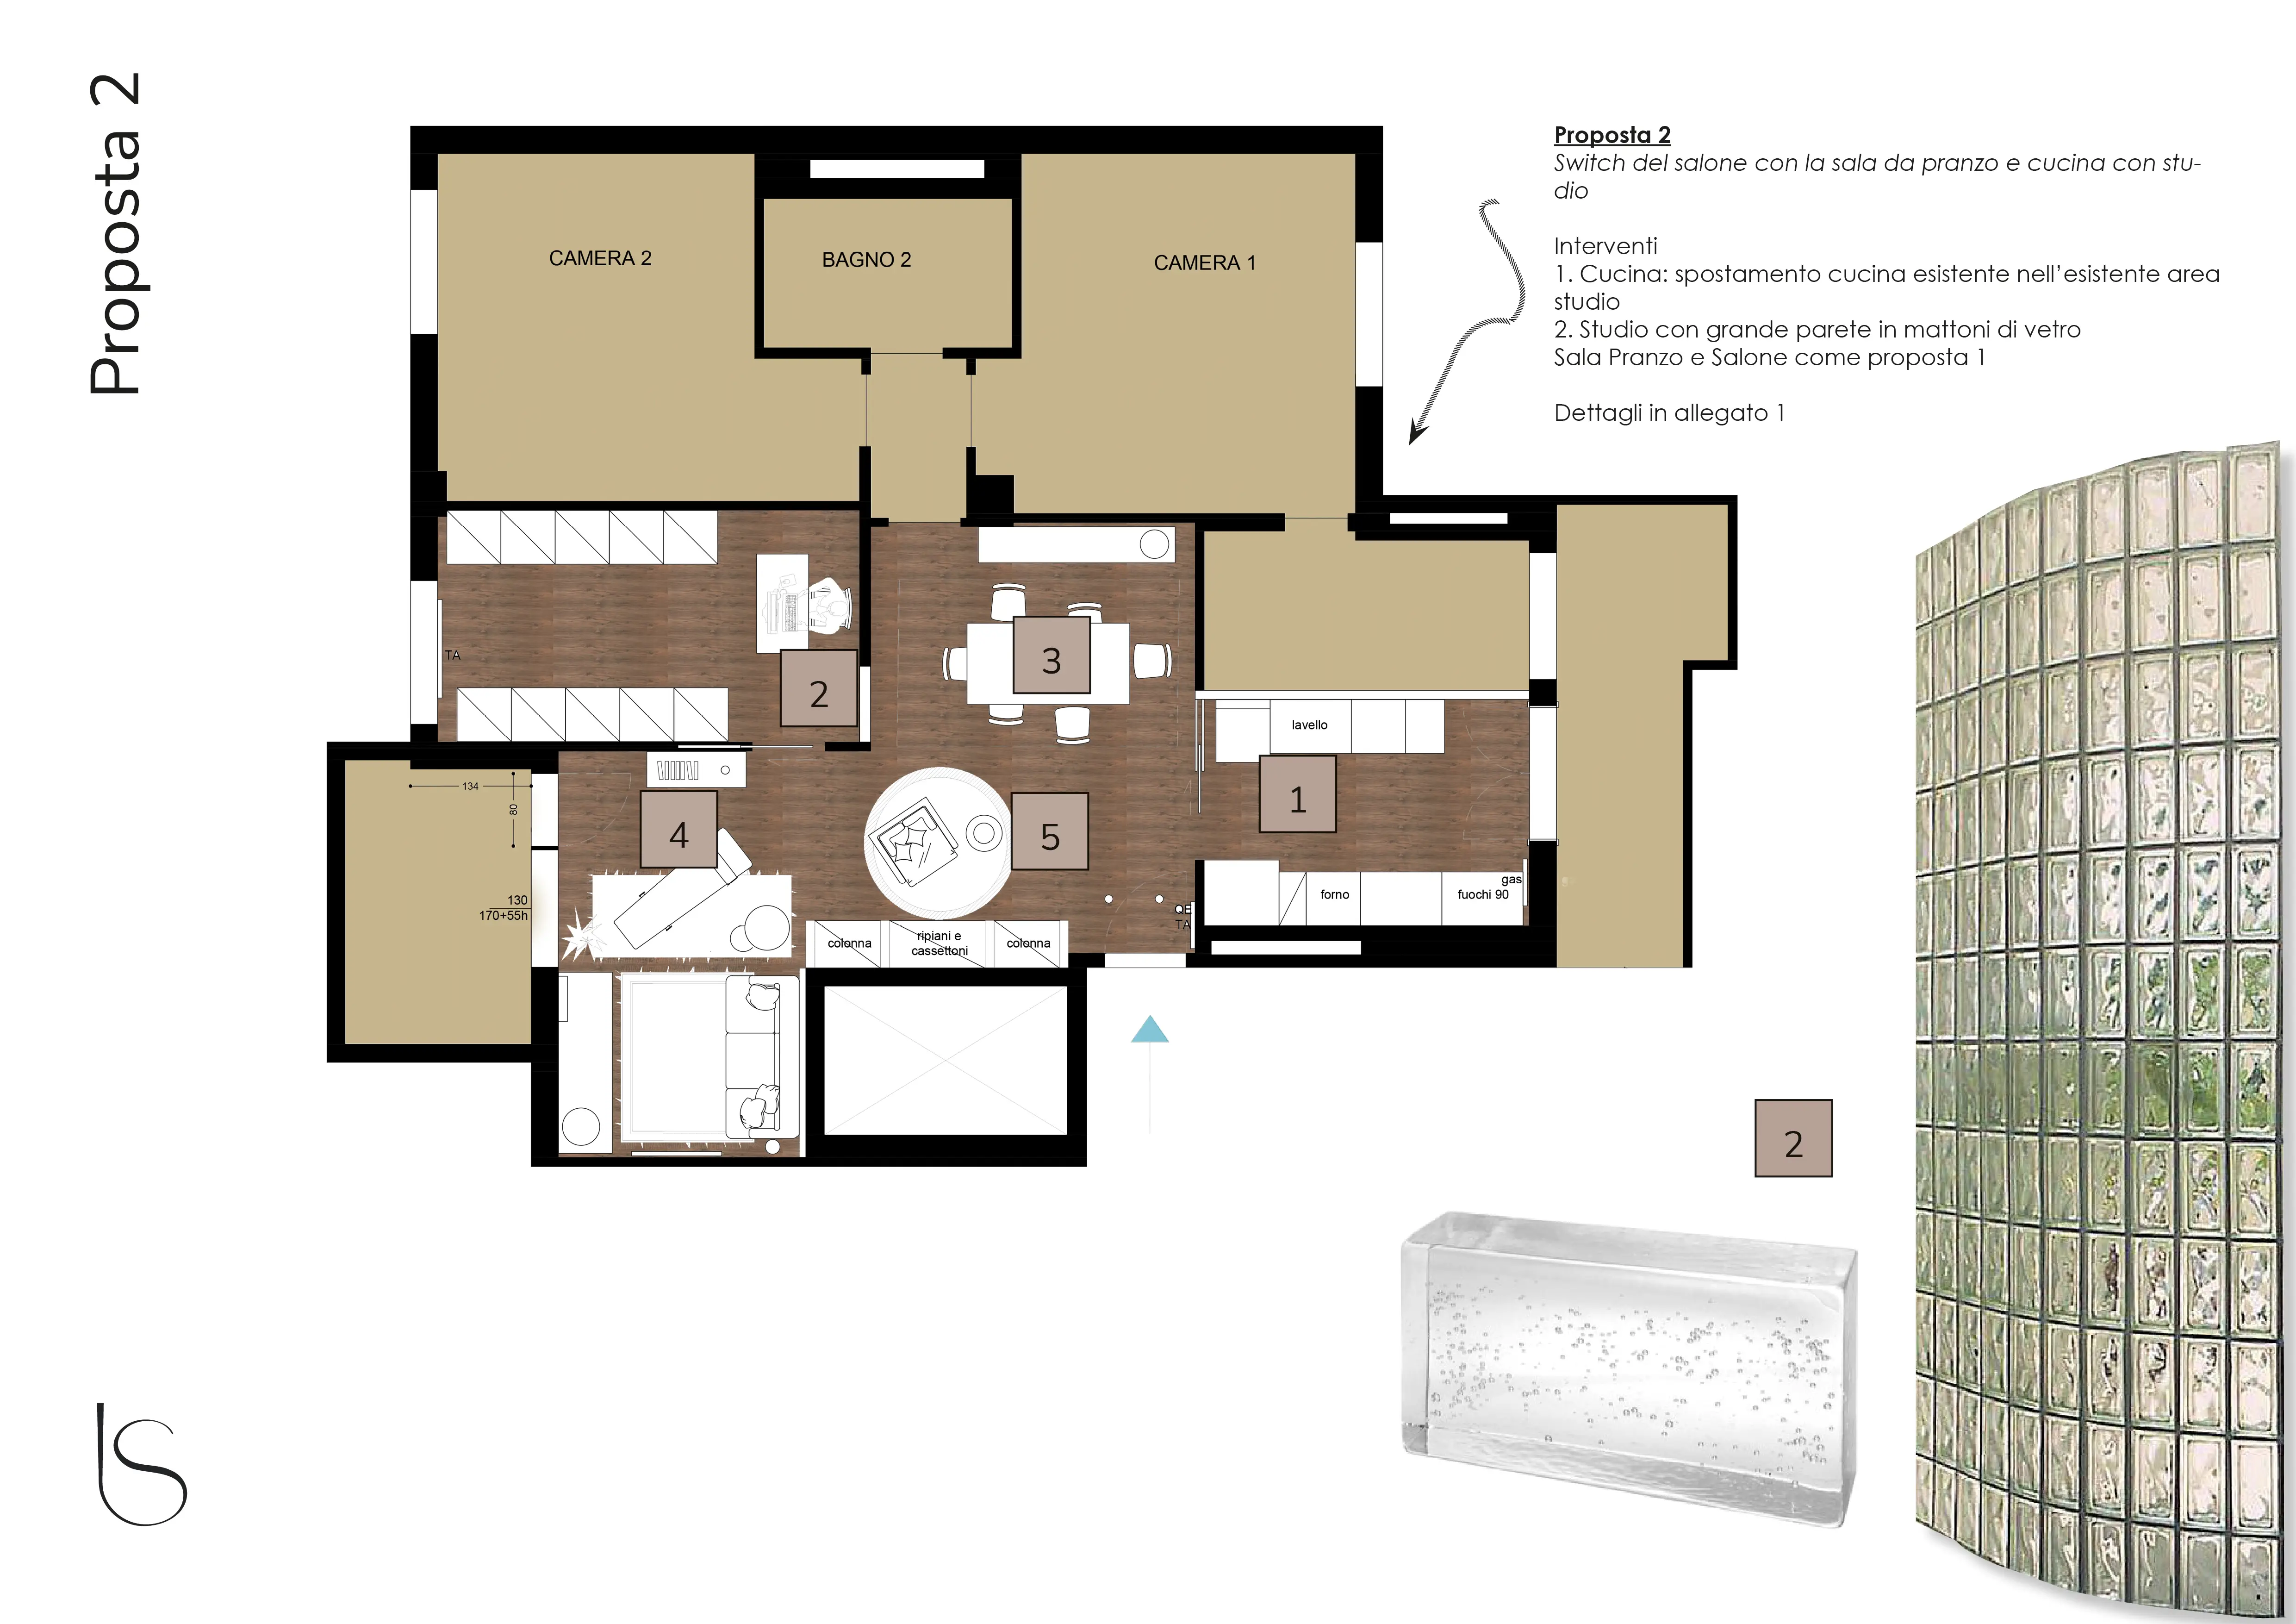 Deuxième proposition de plan de redistribution des espaces par le studio Elles Interior Design, qui a mené l'étude d'aménagement d'un appartement en cours de rénovation.